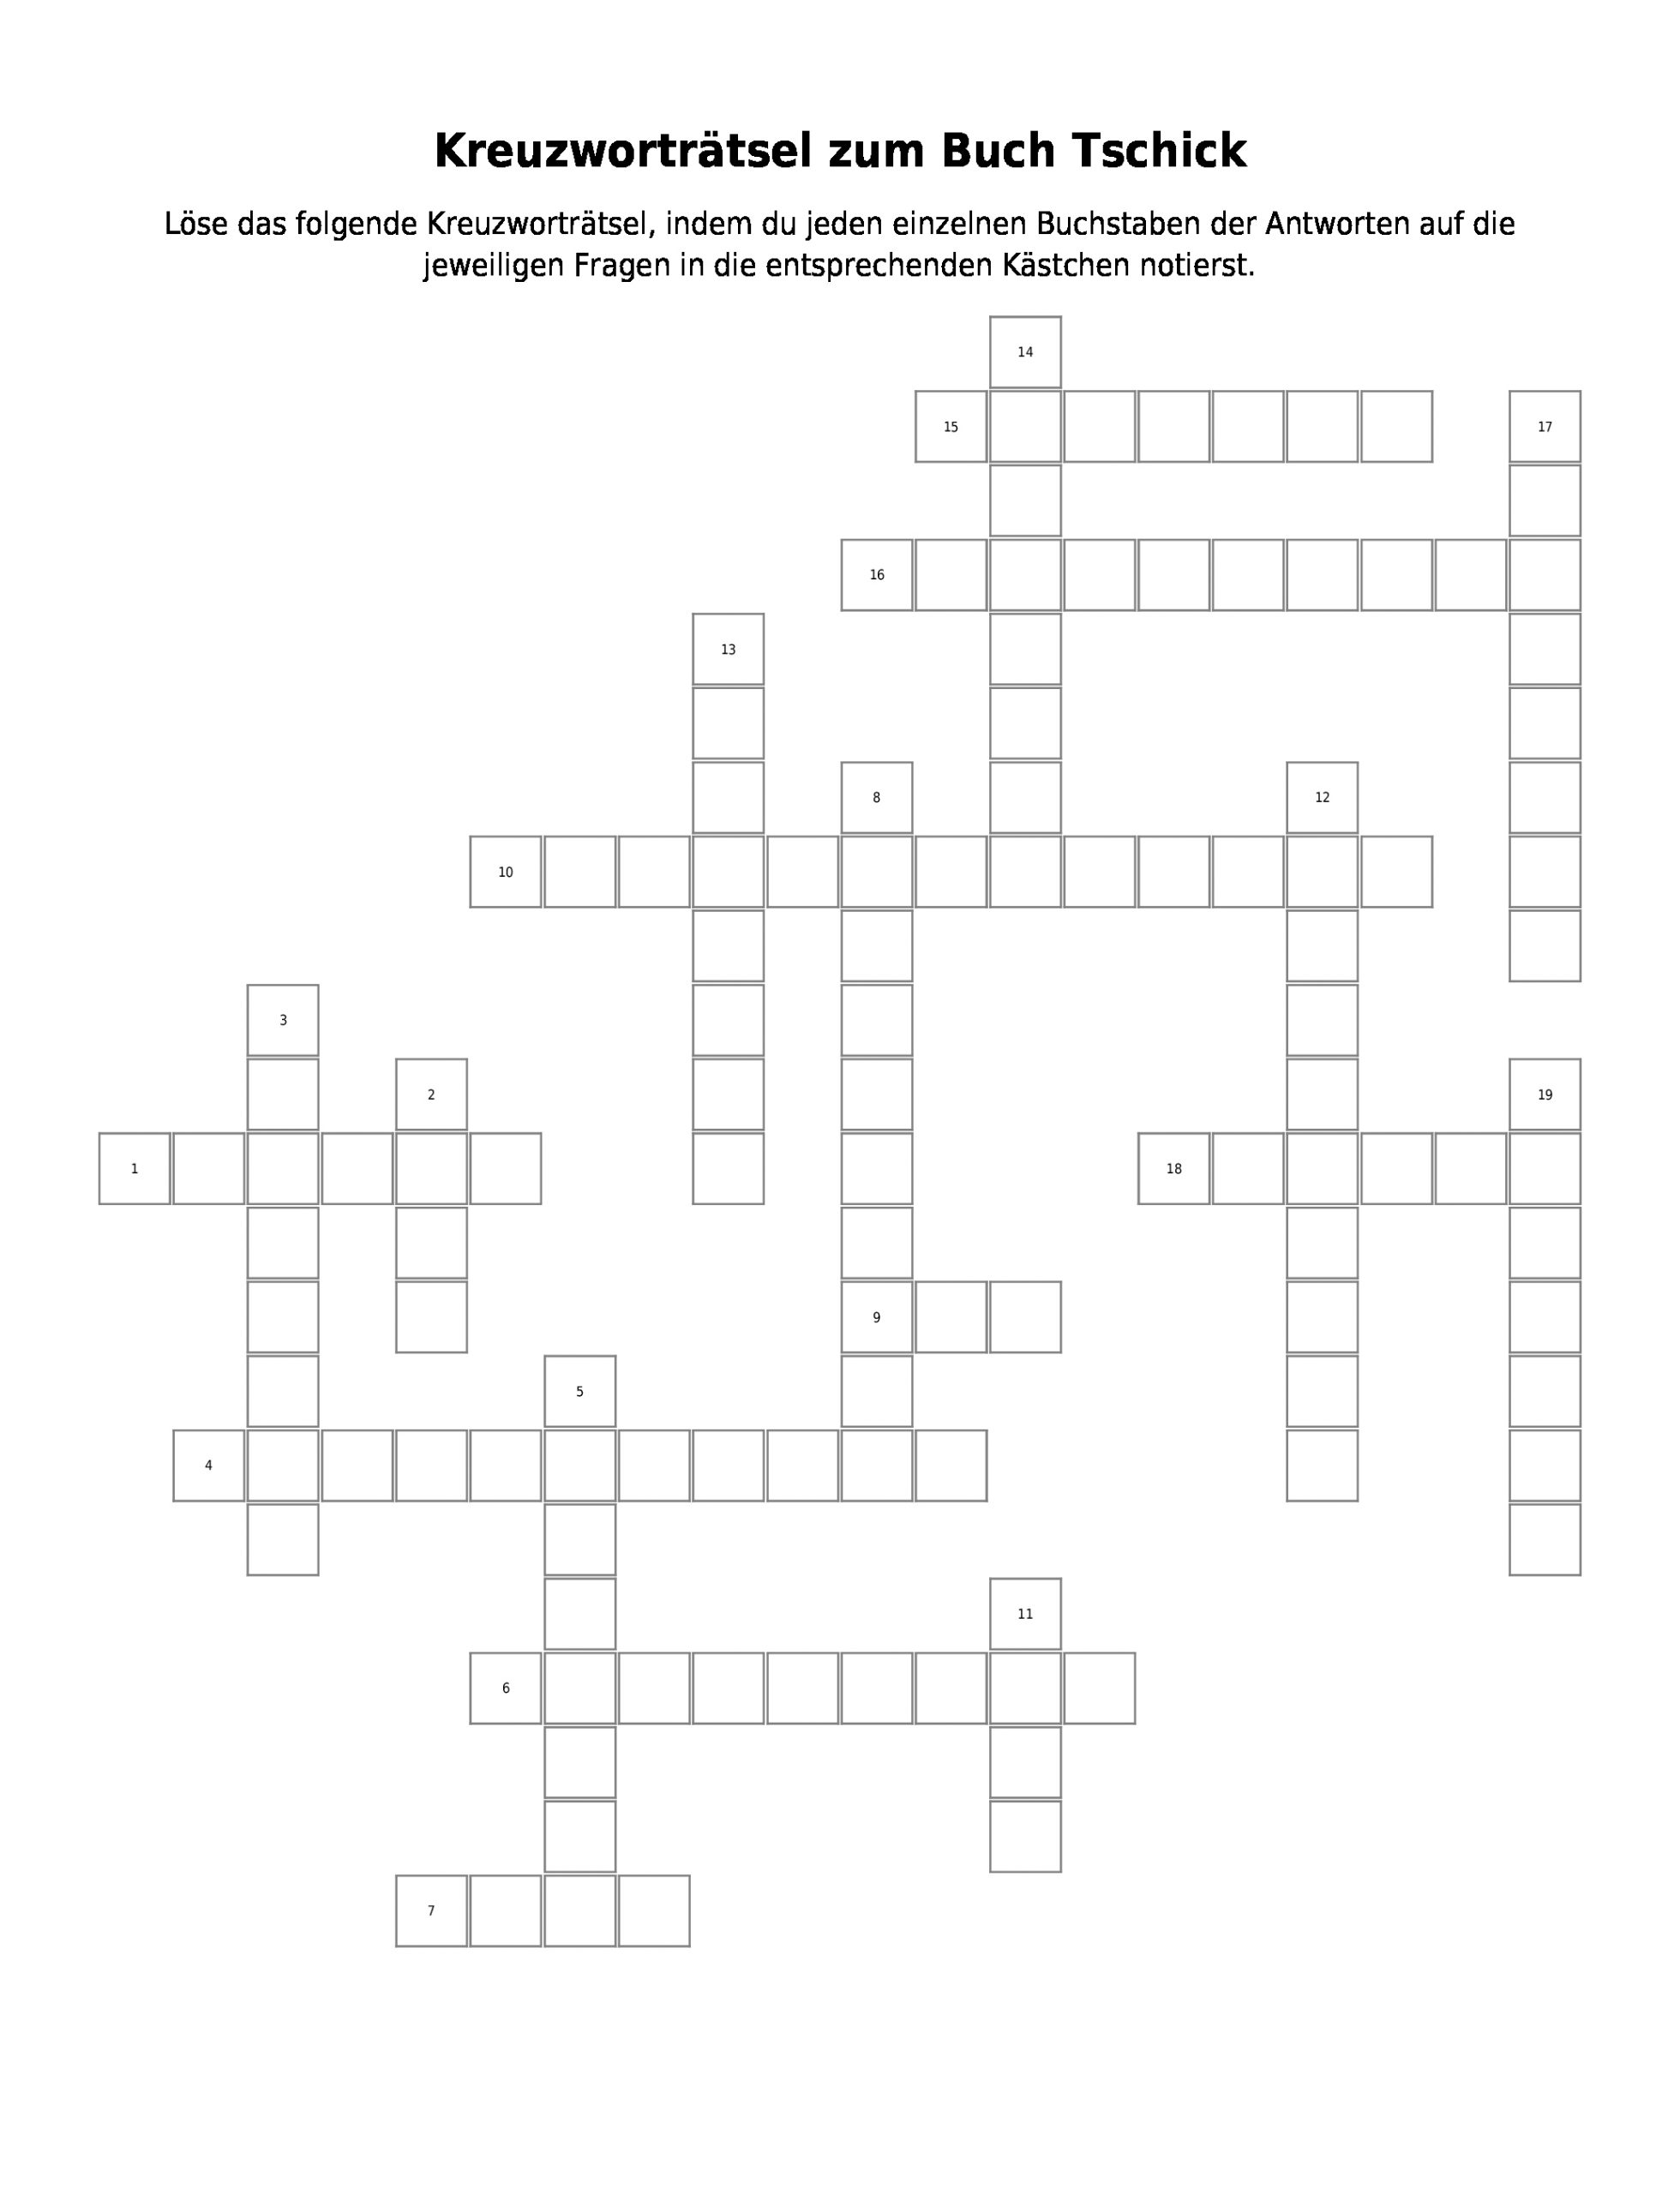 Kreuzworträtsel Zum Buch Tschick – Kreuzworträtsel | Link bei Lösungen Für Kreuzworträtsel Kostenlos